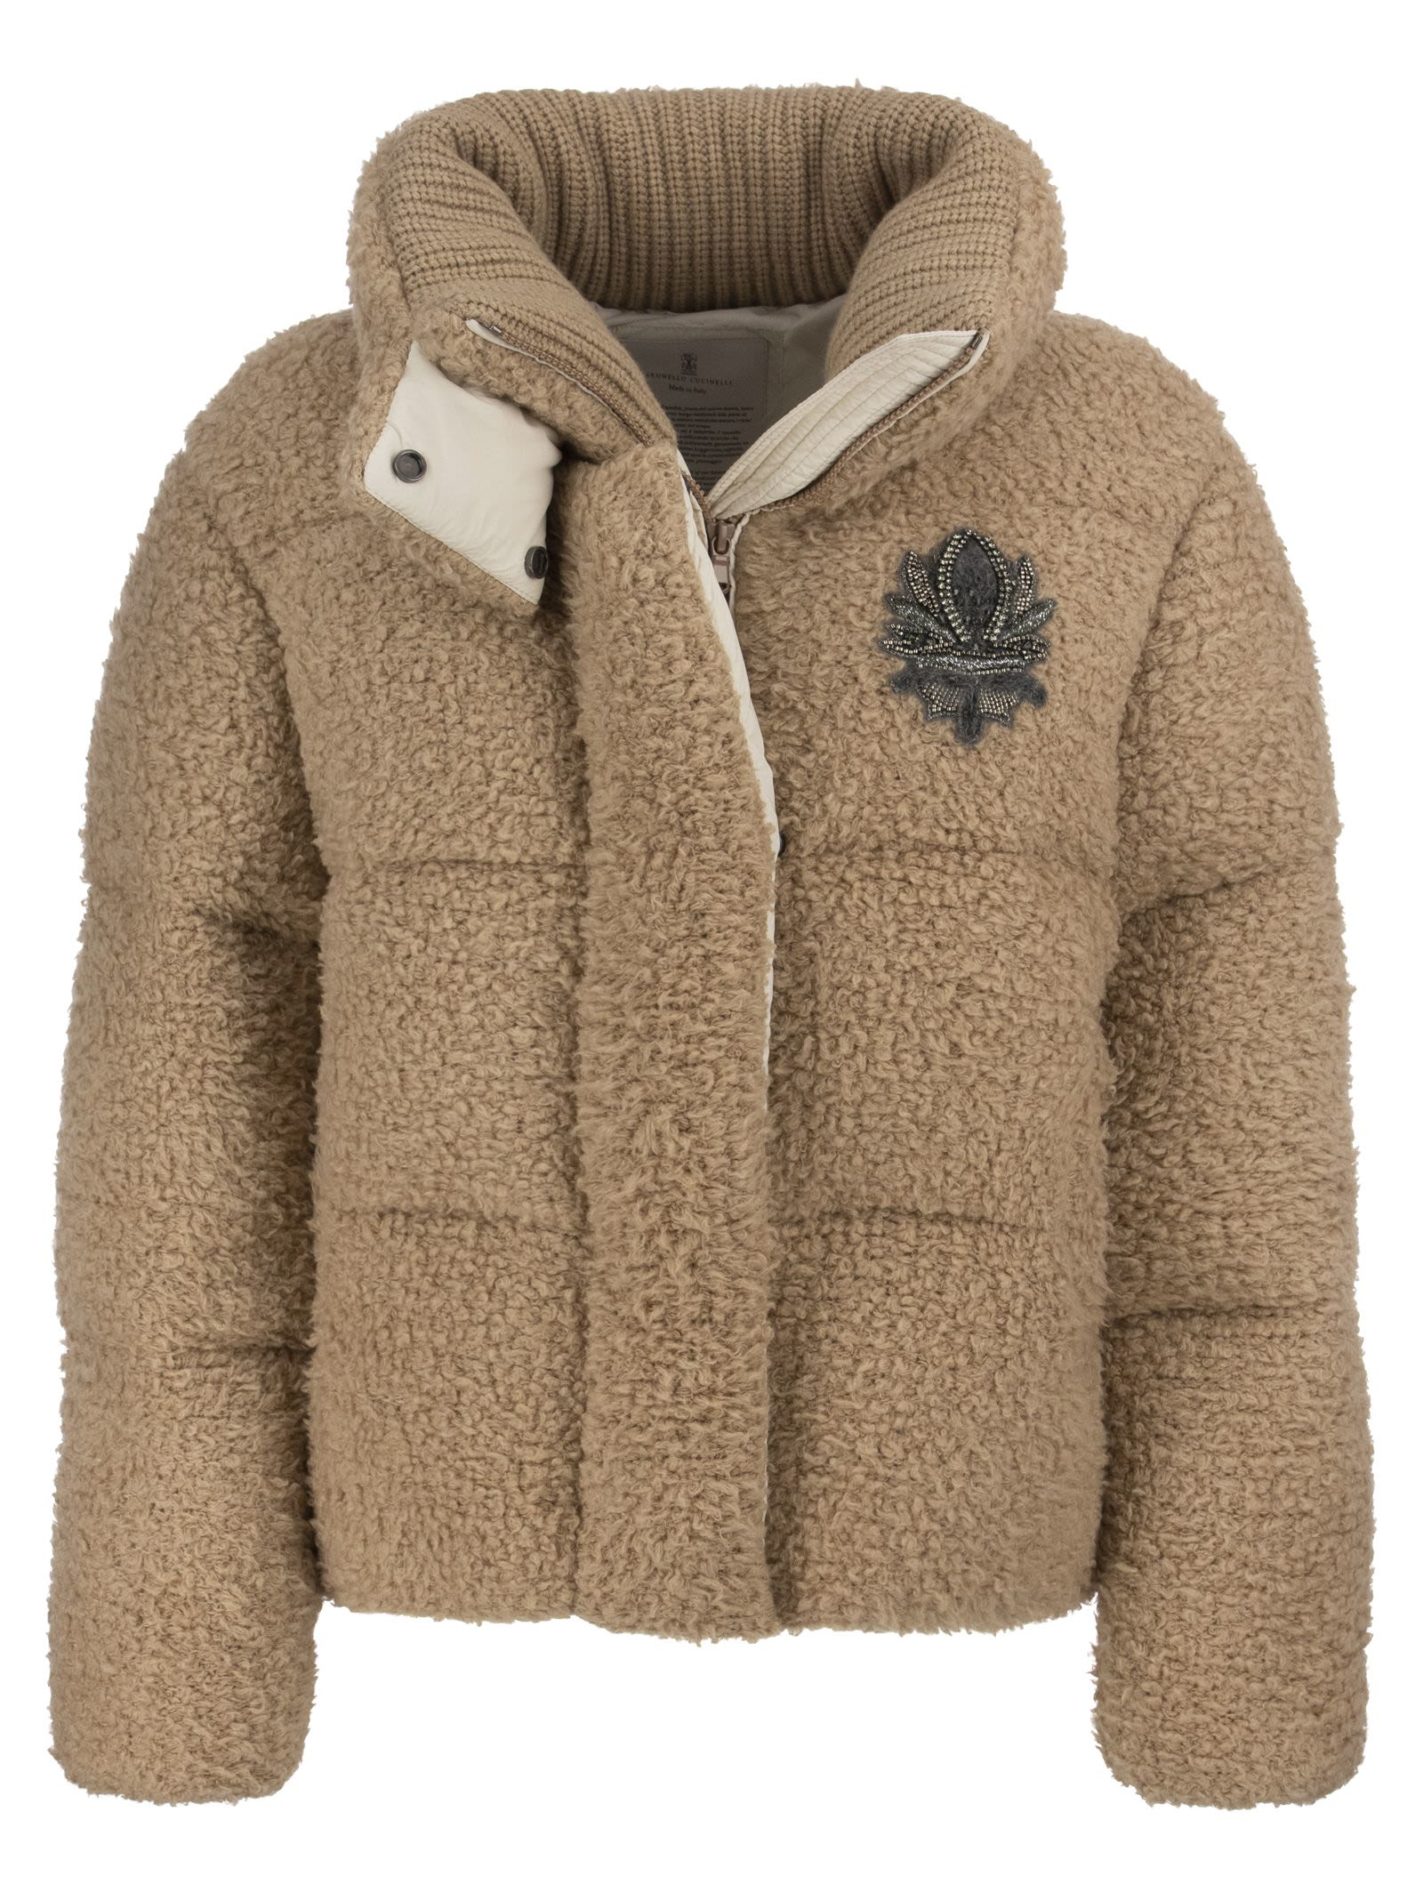 Fleecy cashmere knit down jacket with Swarovski® Crest - Bellettini.com